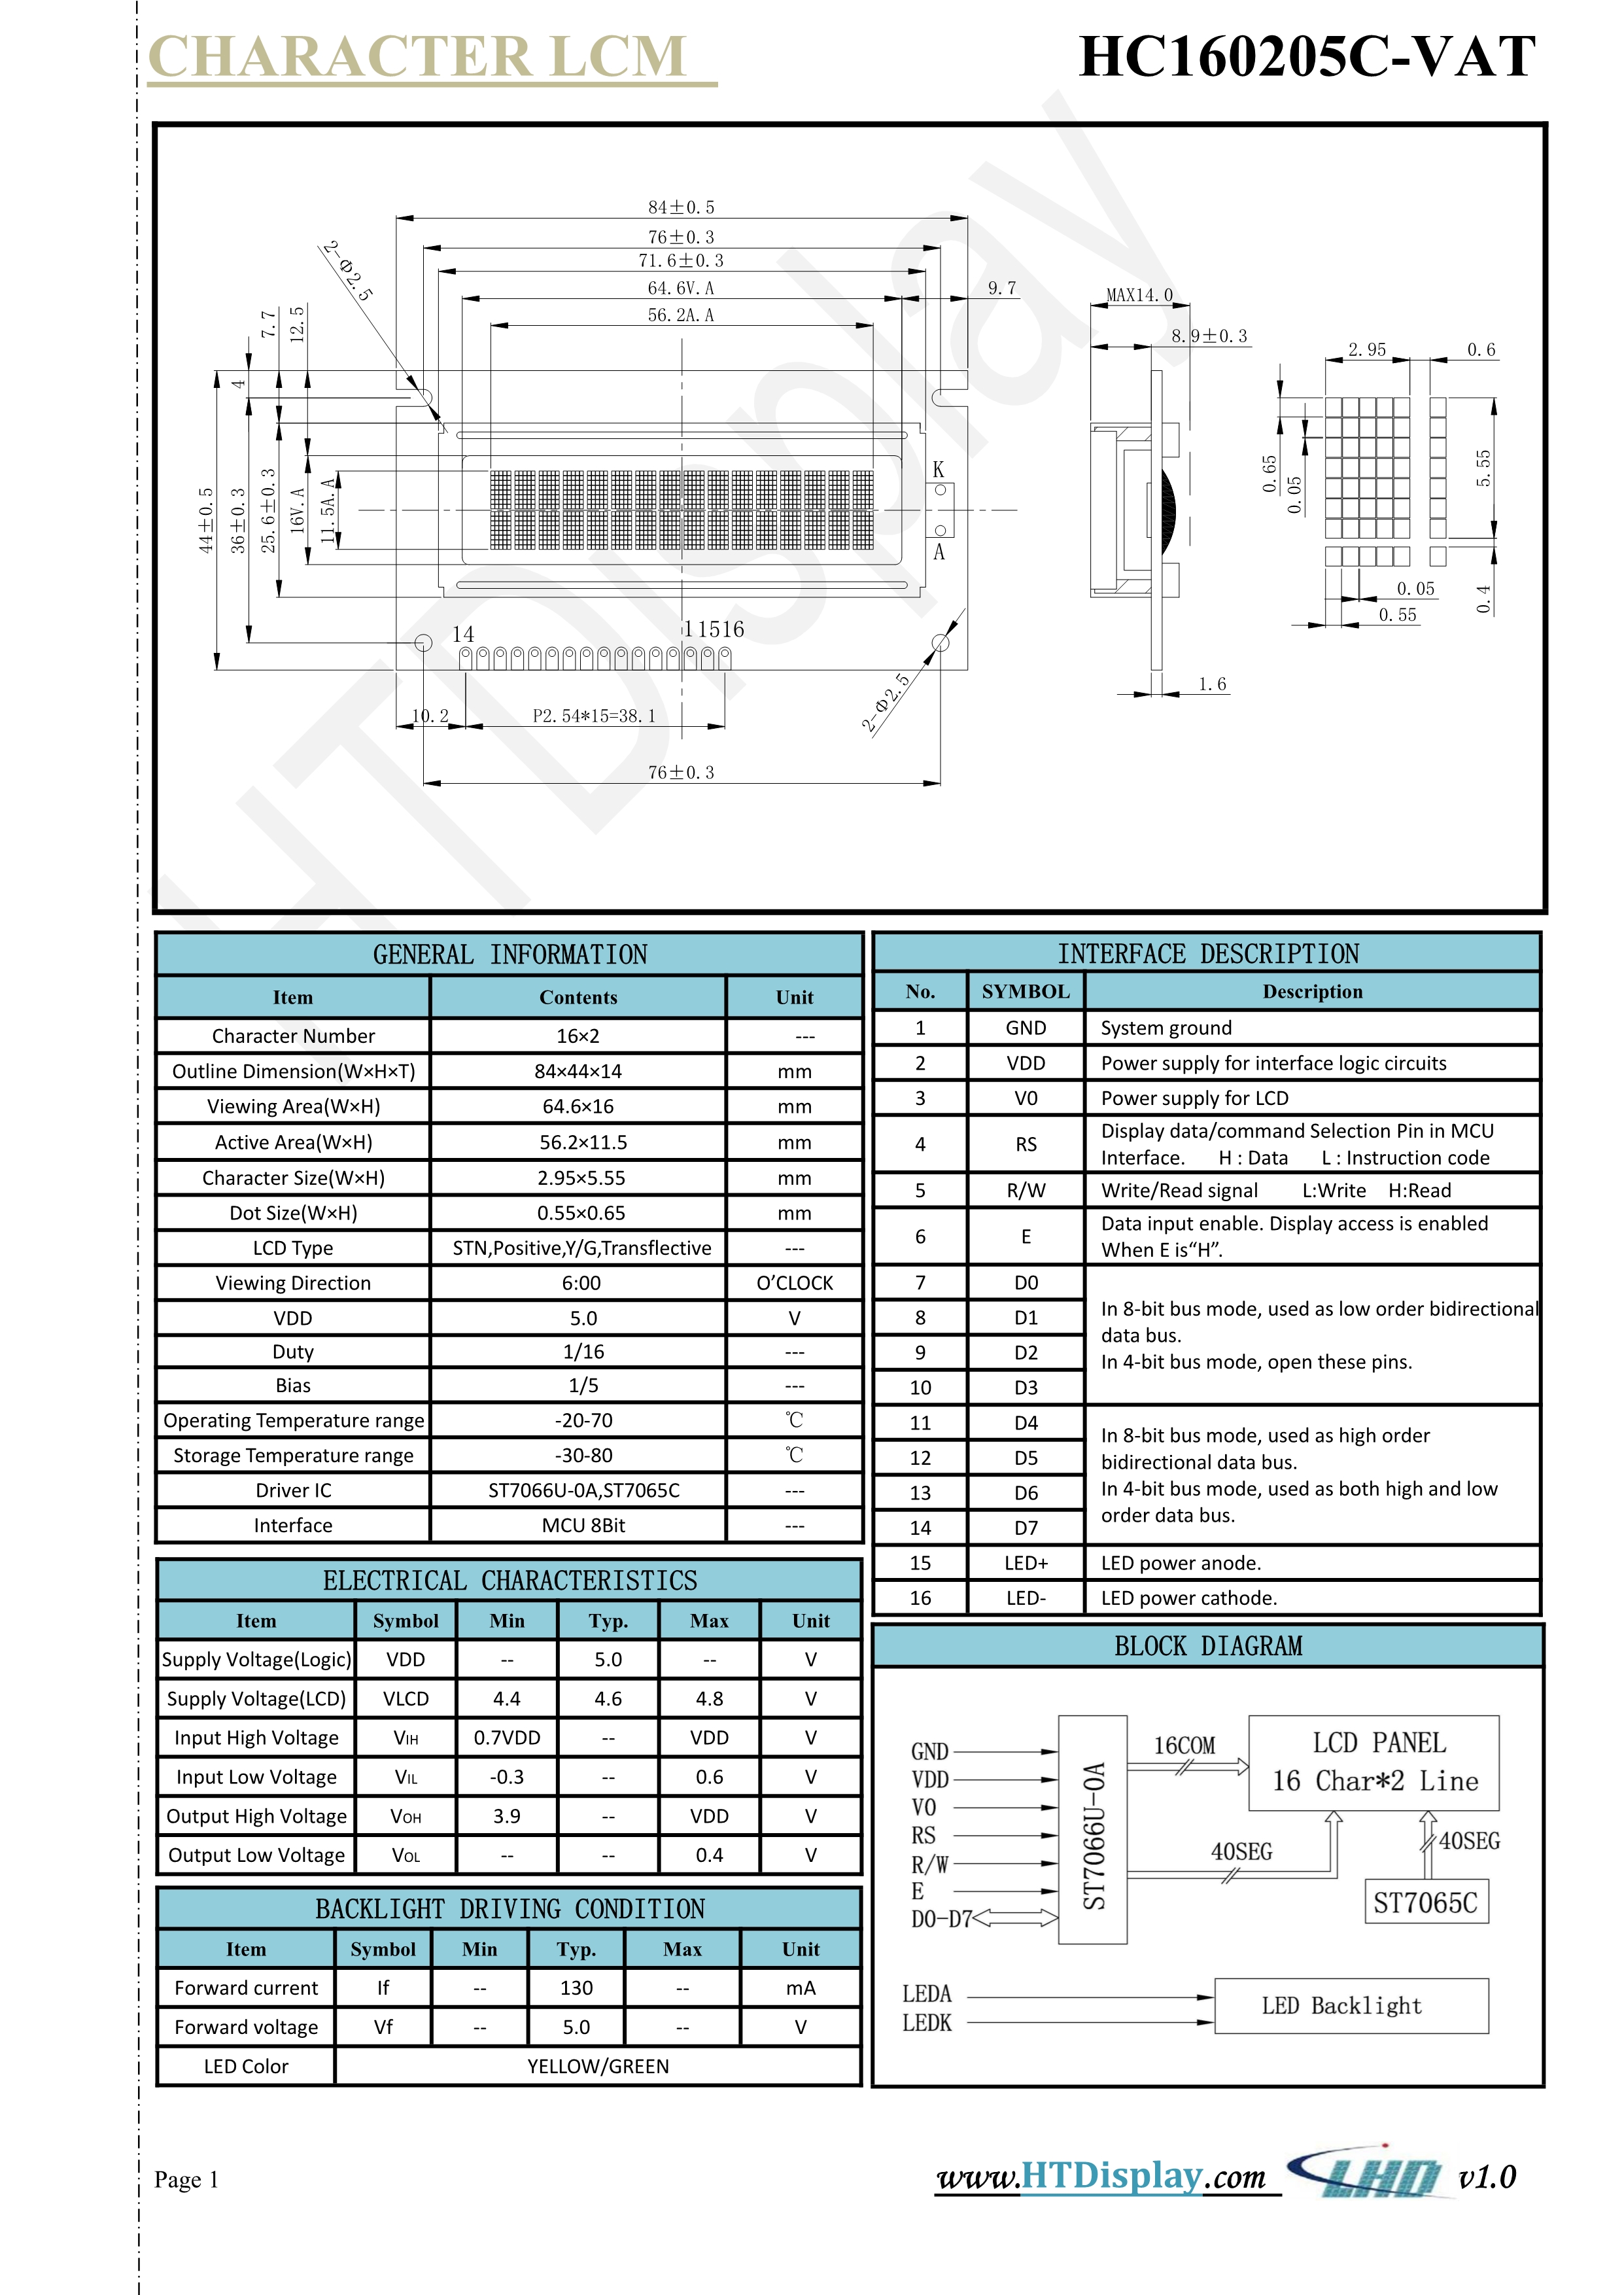 字符型HC160205C-VAT